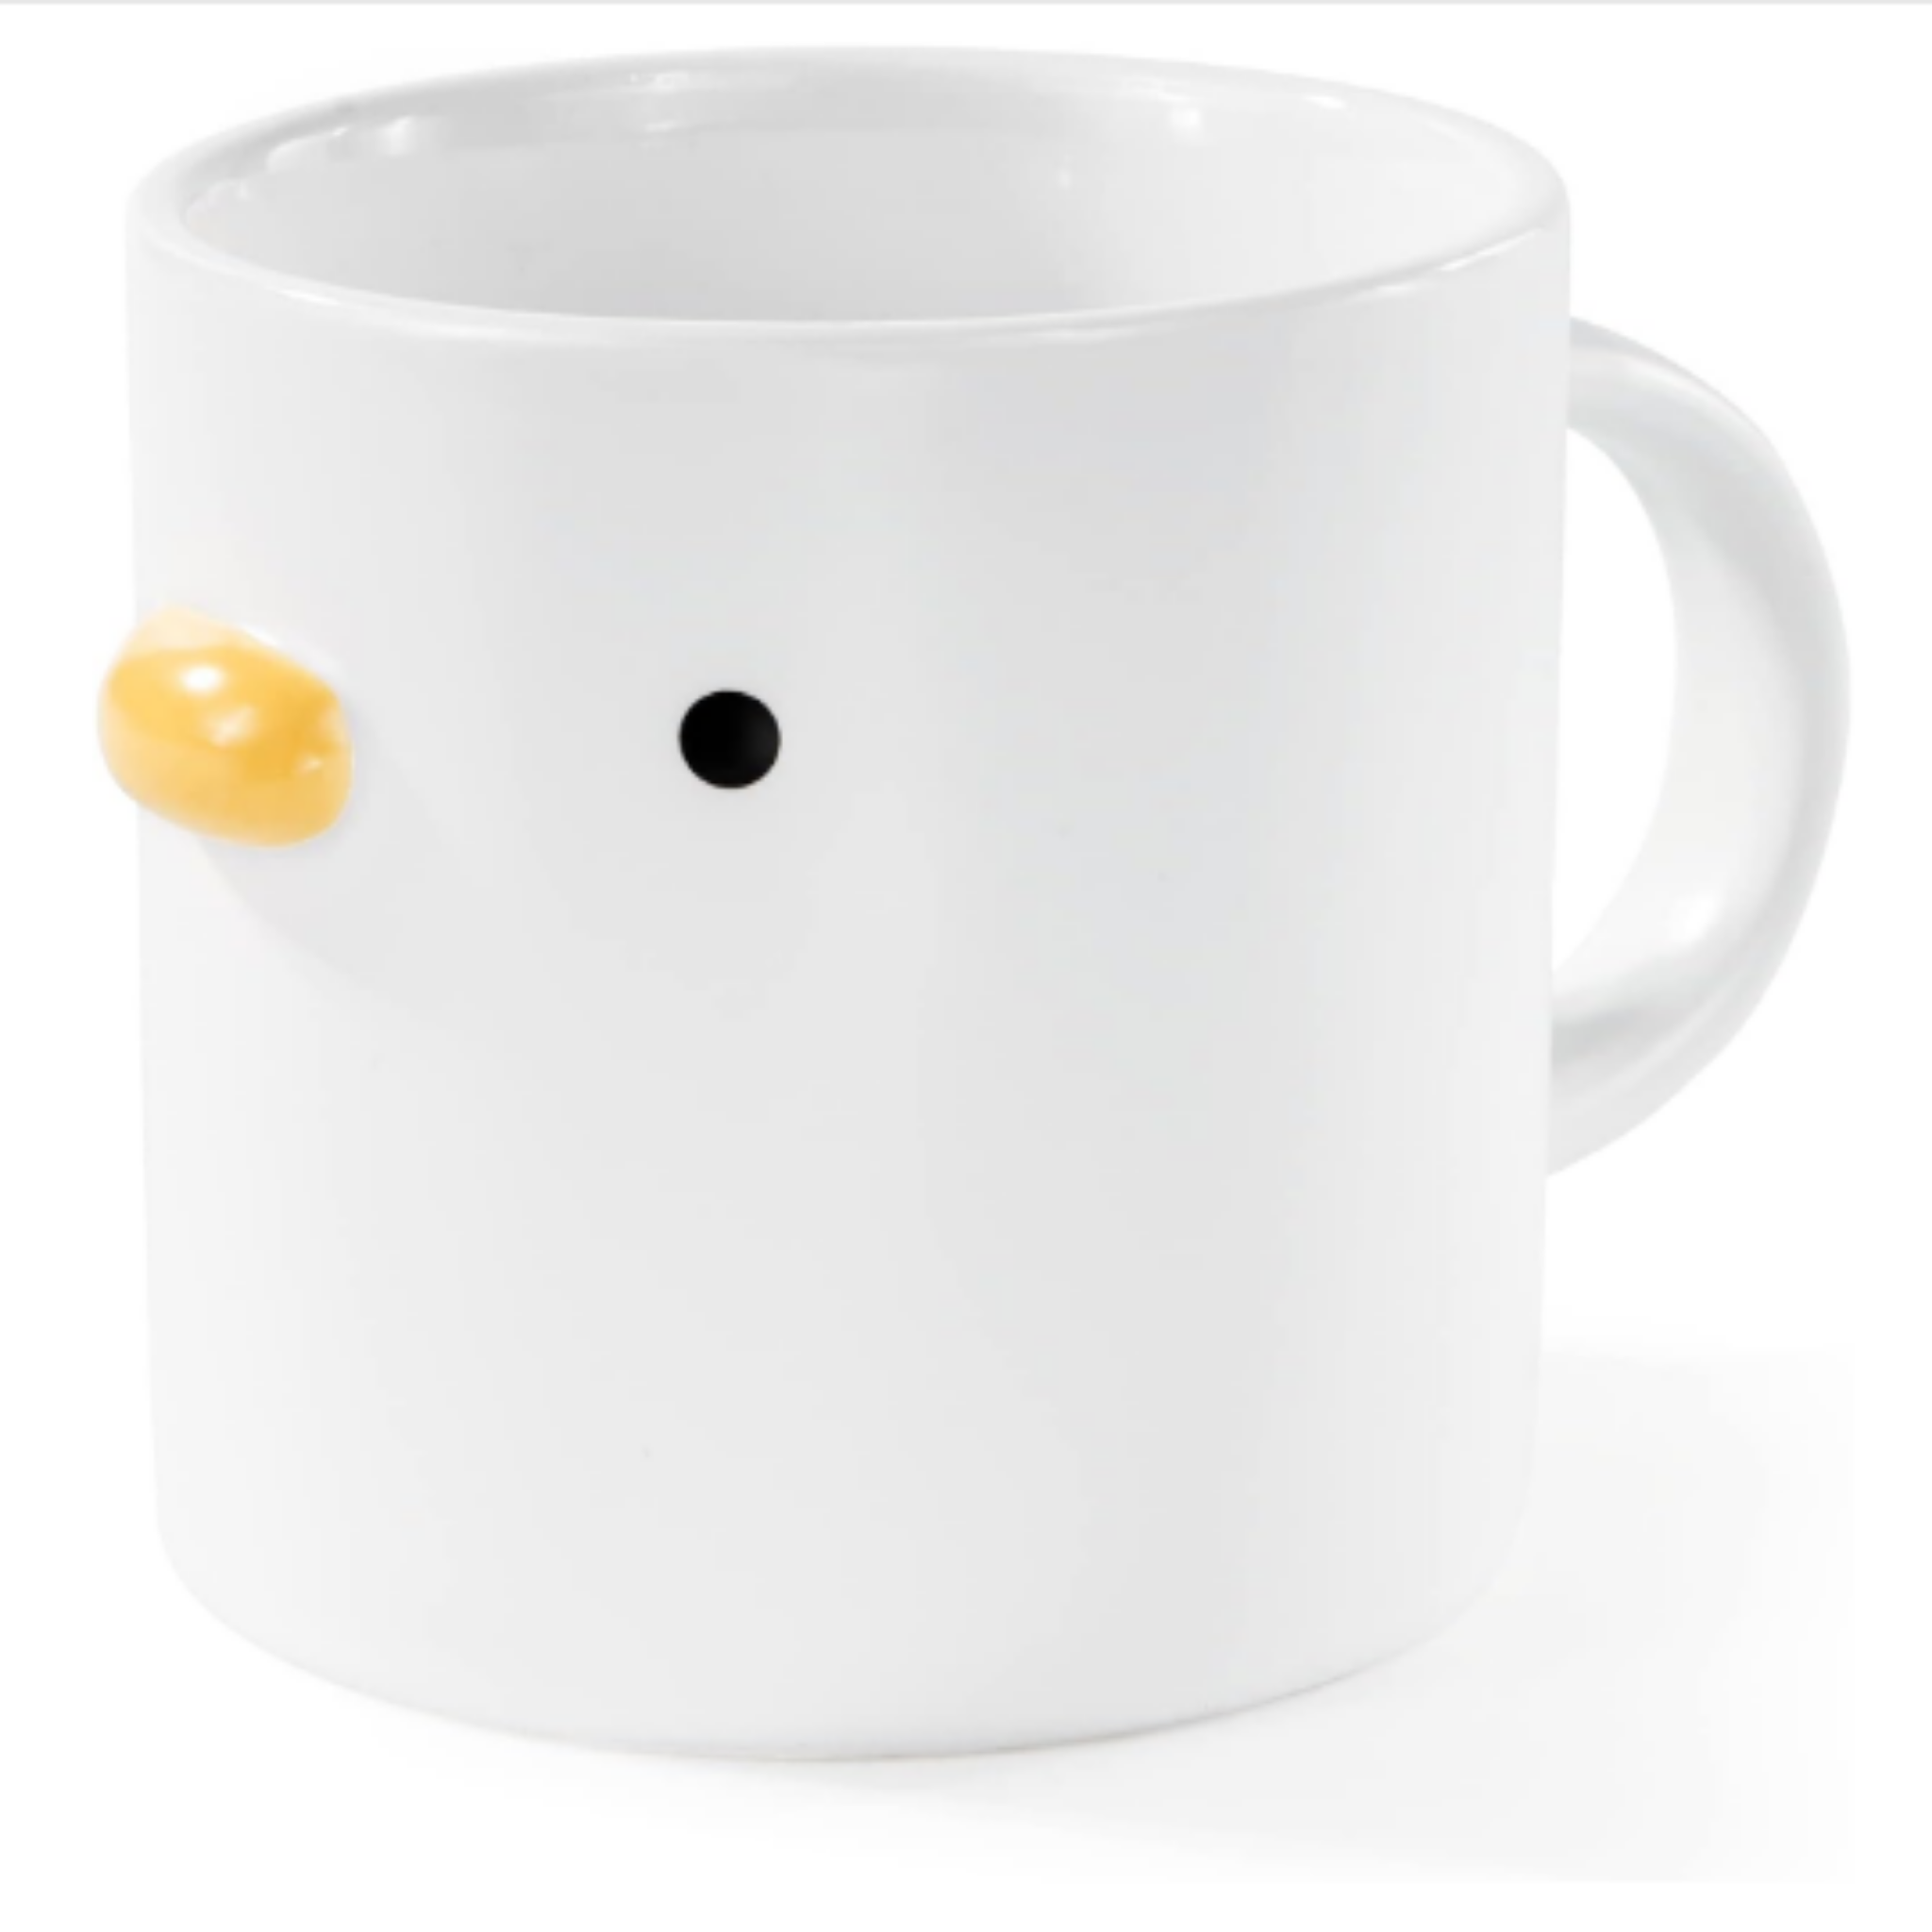 Little Fluffs Ceramic Duck Shaped Mug